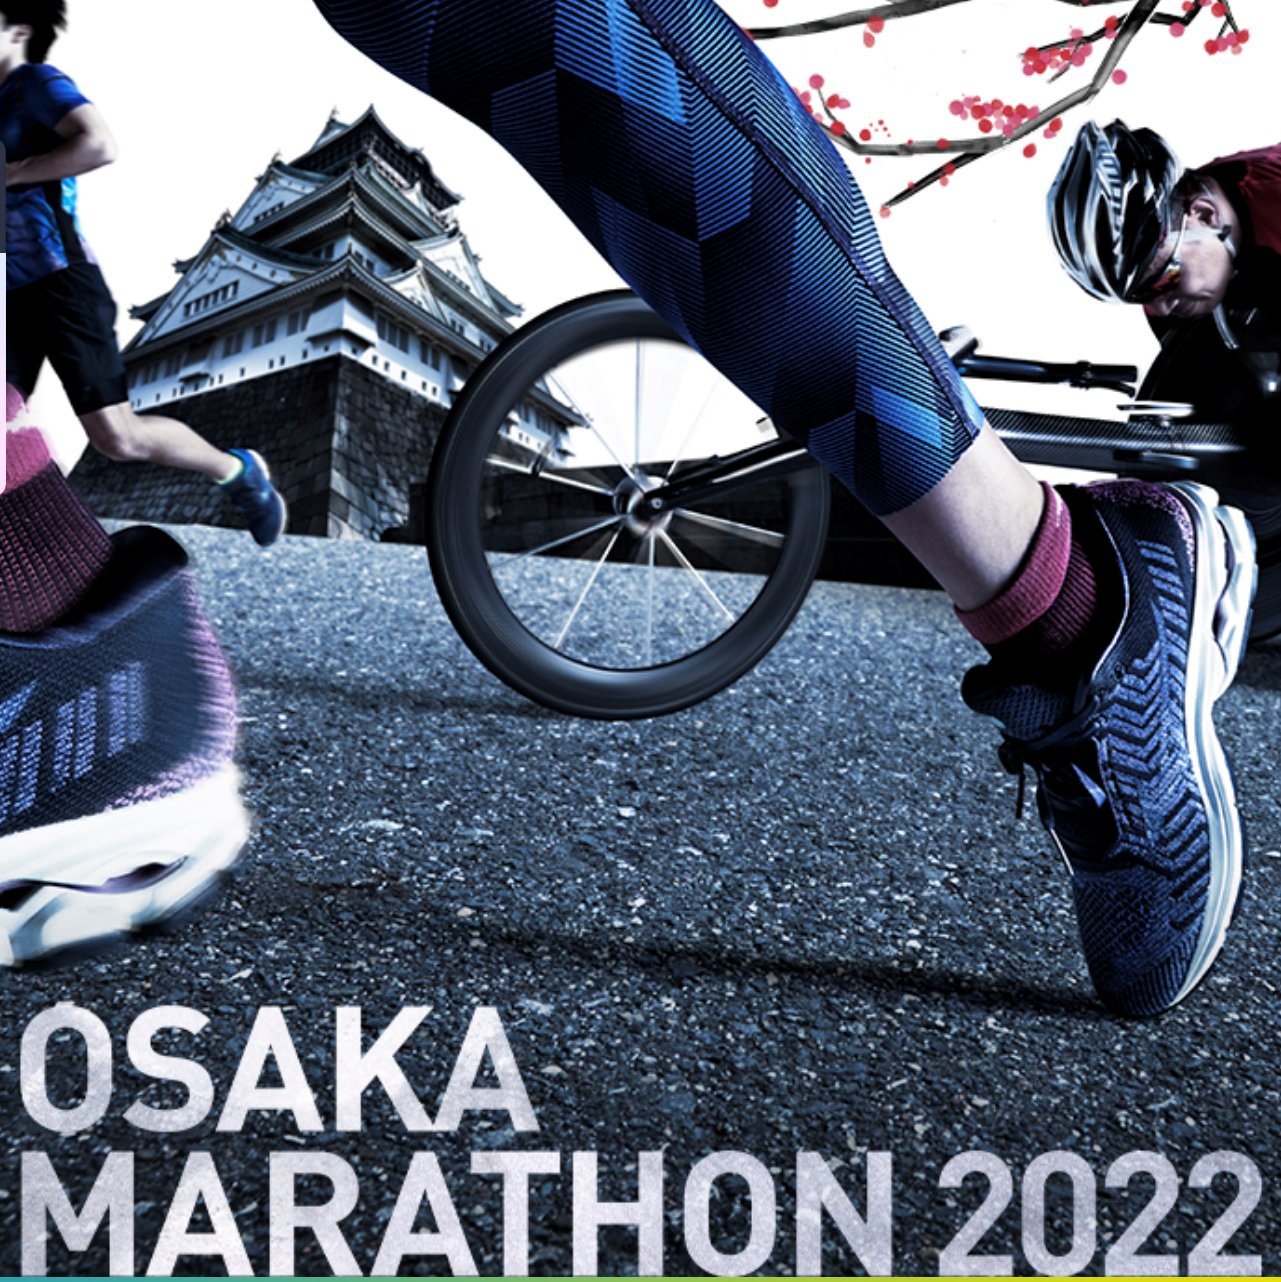 毎日 2022 びわ湖 結果 マラソン 【大阪・びわ湖毎日マラソン統合大会】星岳が初マラソン最高記録で優勝！「驚いています…出来すぎ」― スポニチ